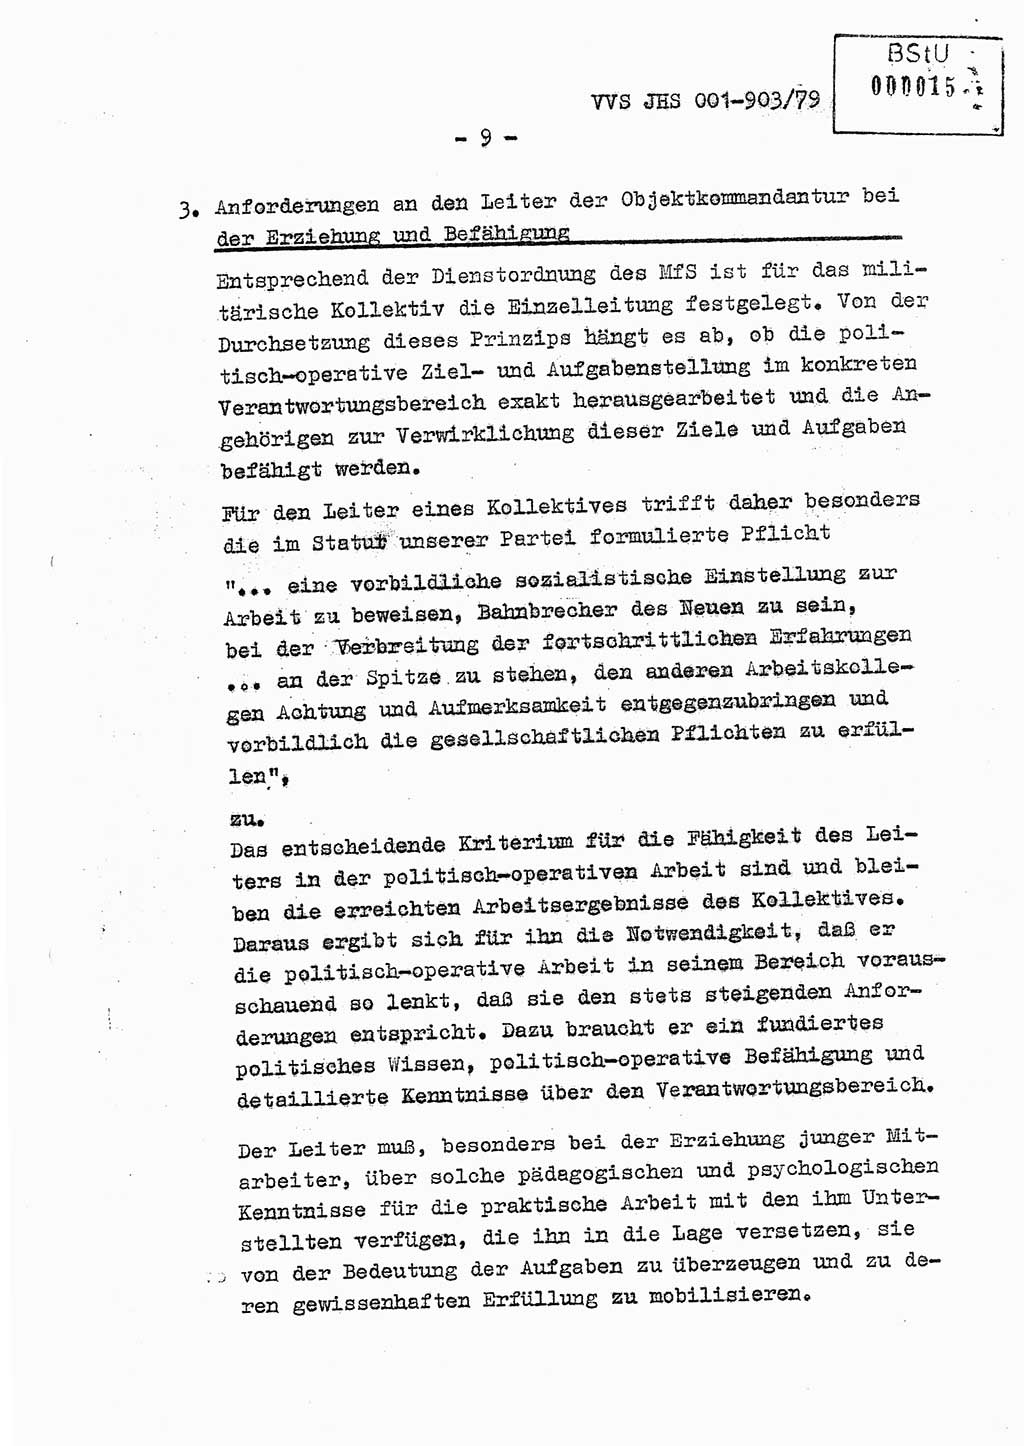 Fachschulabschlußarbeit Oberleutnant Jochen Pfeffer (HA Ⅸ/AGL), Ministerium für Staatssicherheit (MfS) [Deutsche Demokratische Republik (DDR)], Juristische Hochschule (JHS), Vertrauliche Verschlußsache (VVS) 001-903/79, Potsdam 1979, Seite 9 (FS-Abschl.-Arb. MfS DDR JHS VVS 001-903/79 1979, S. 9)